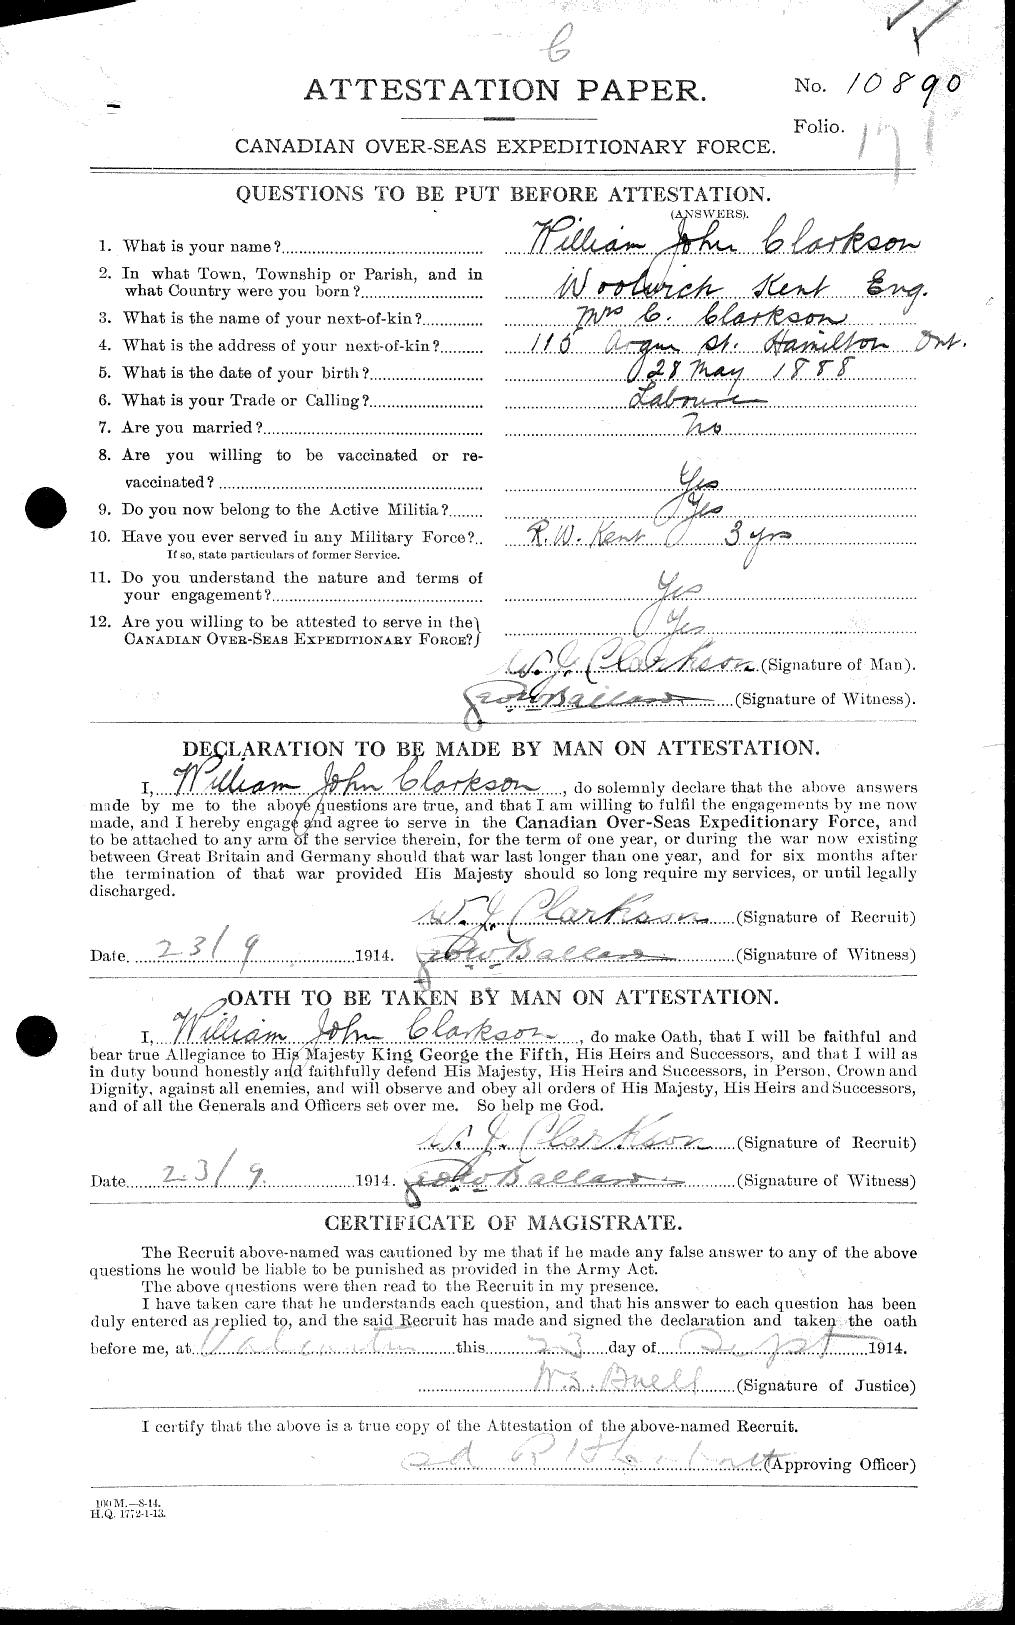 Dossiers du Personnel de la Première Guerre mondiale - CEC 019025a